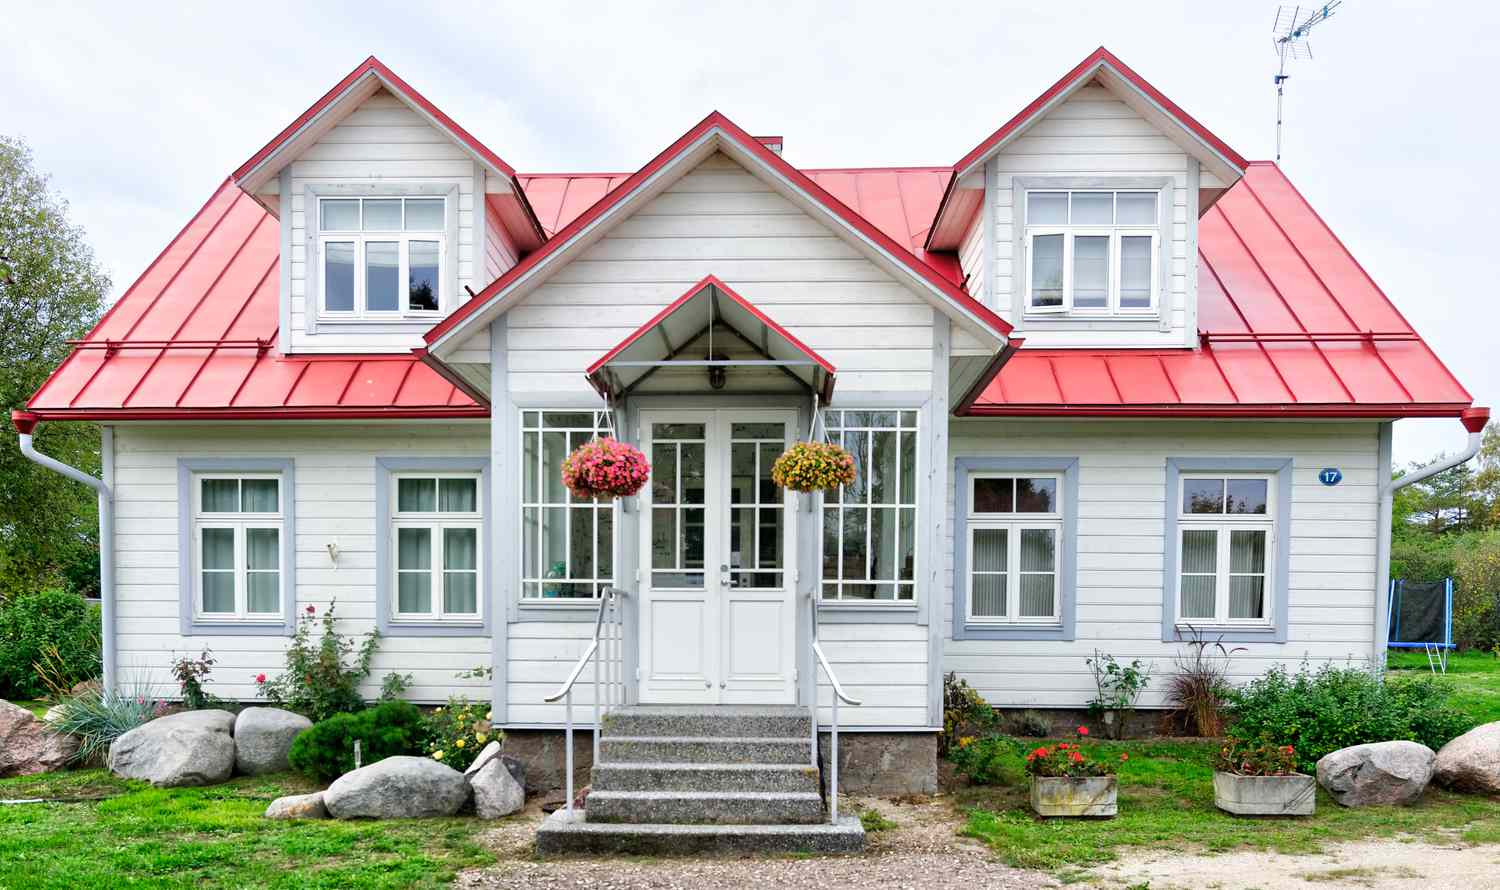 Petite maison avec toit rouge et jolie porte d'entrée